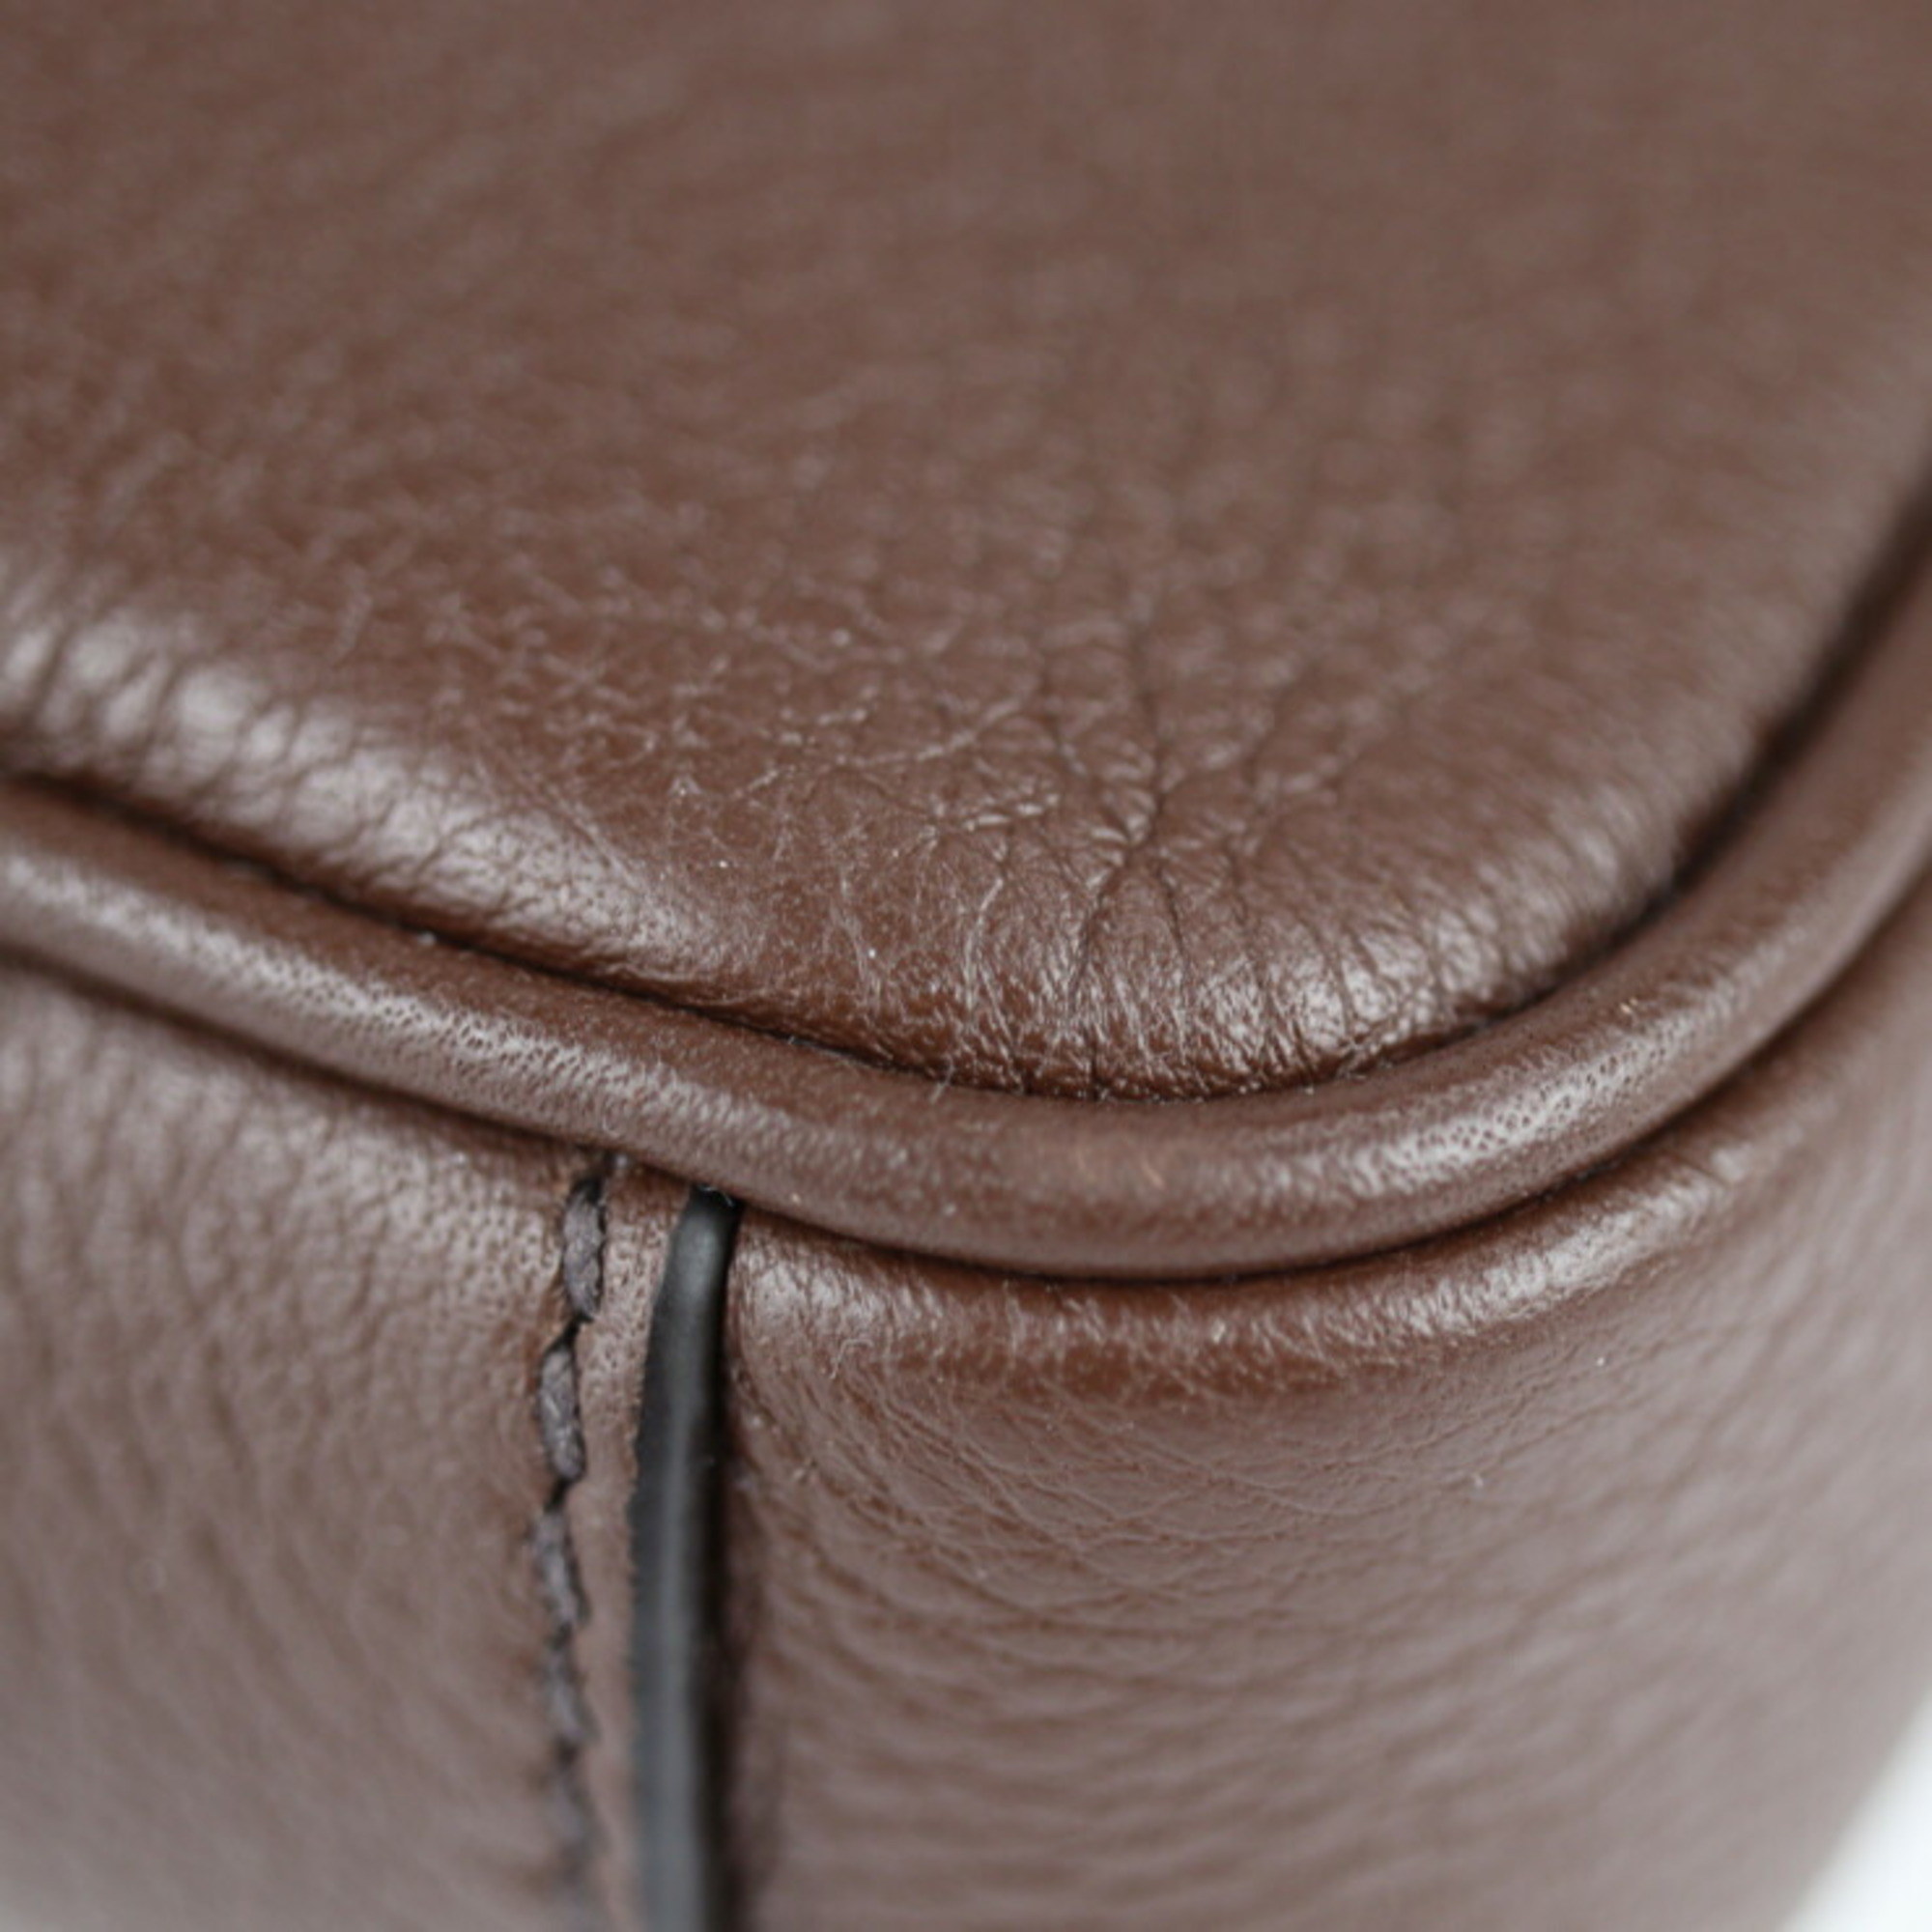 PRADA Prada second bag 2VF007 leather brown clutch handbag